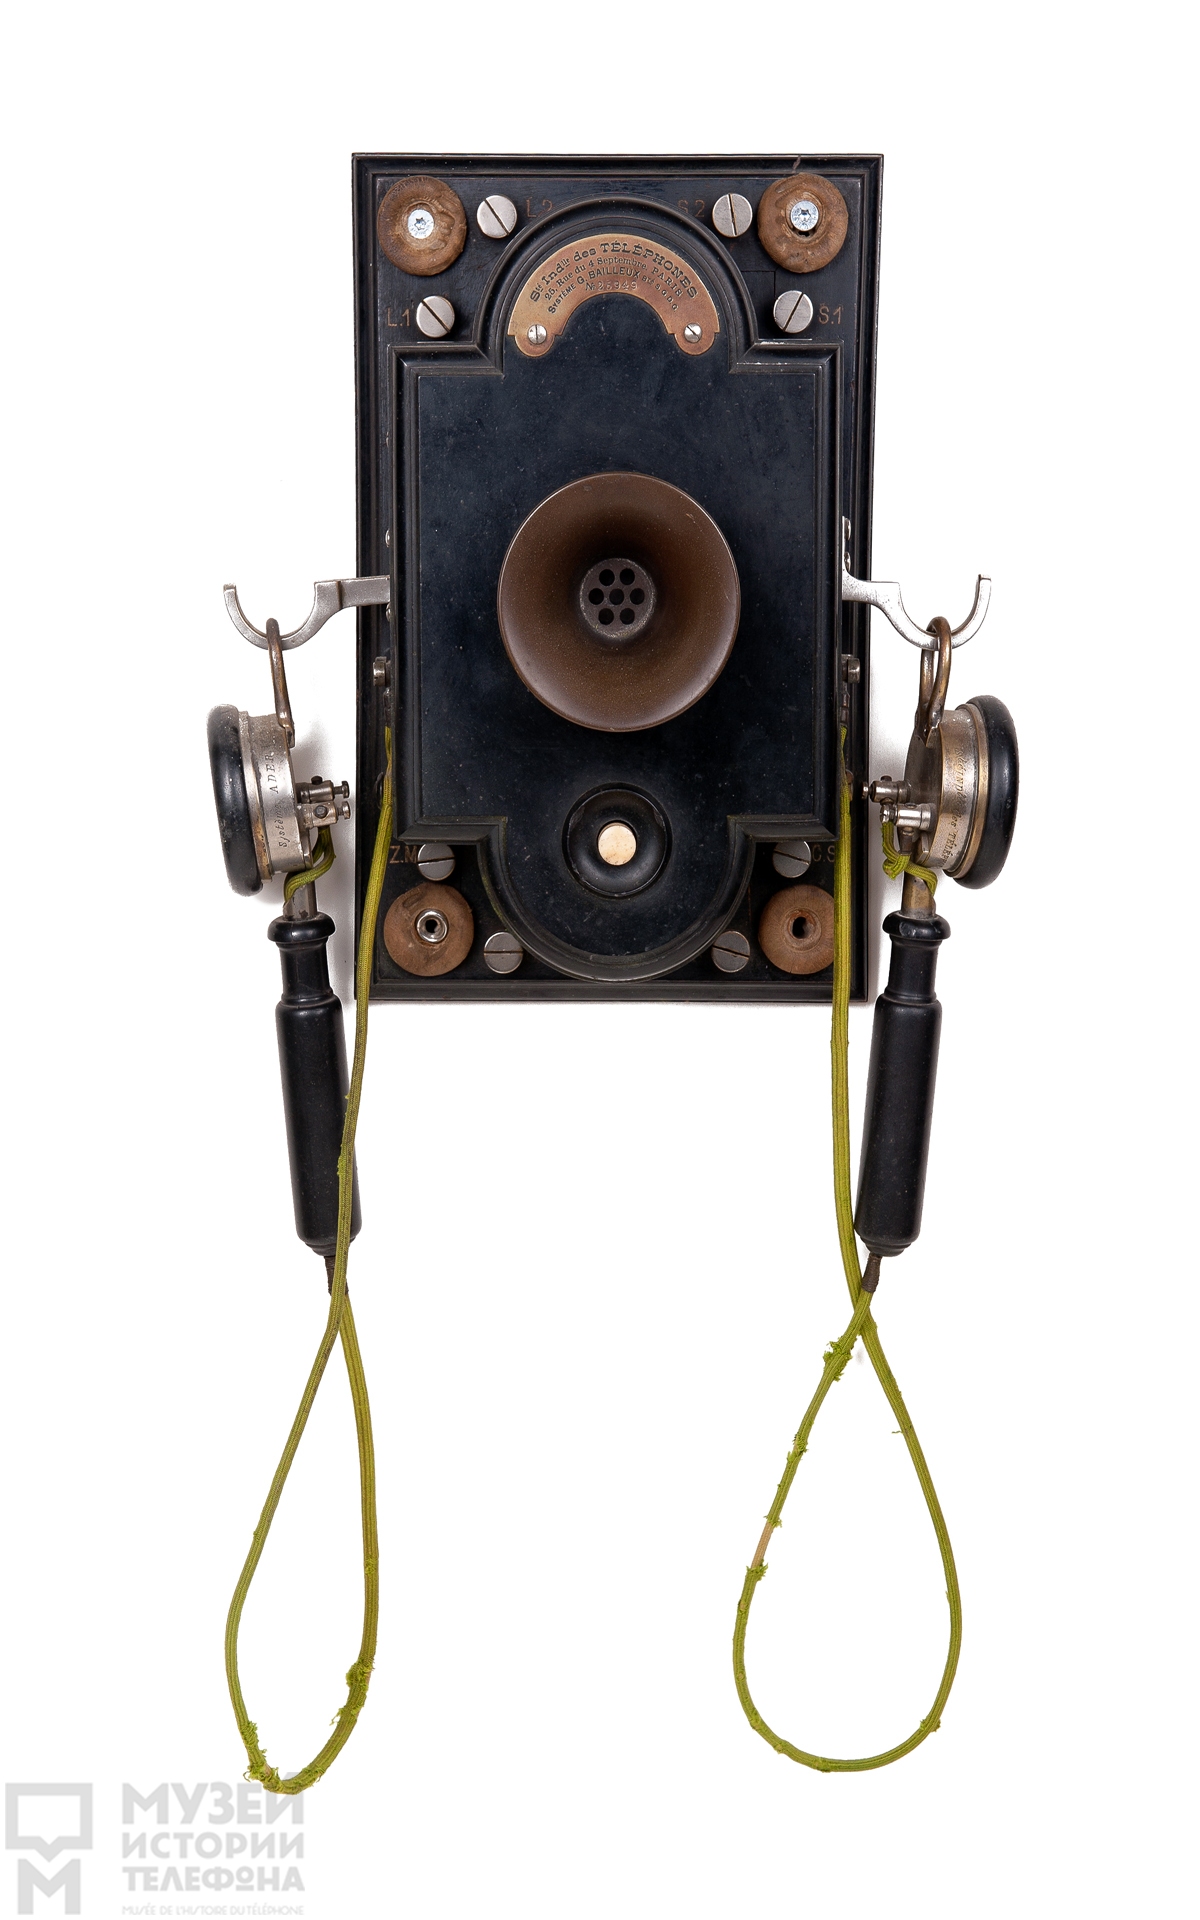 Телефонный аппарат батарейного вызова системы  Ж.Байё с микрофоном и двумя наушниками конструкции К.Адера, материал корпуса - прессованная древесина